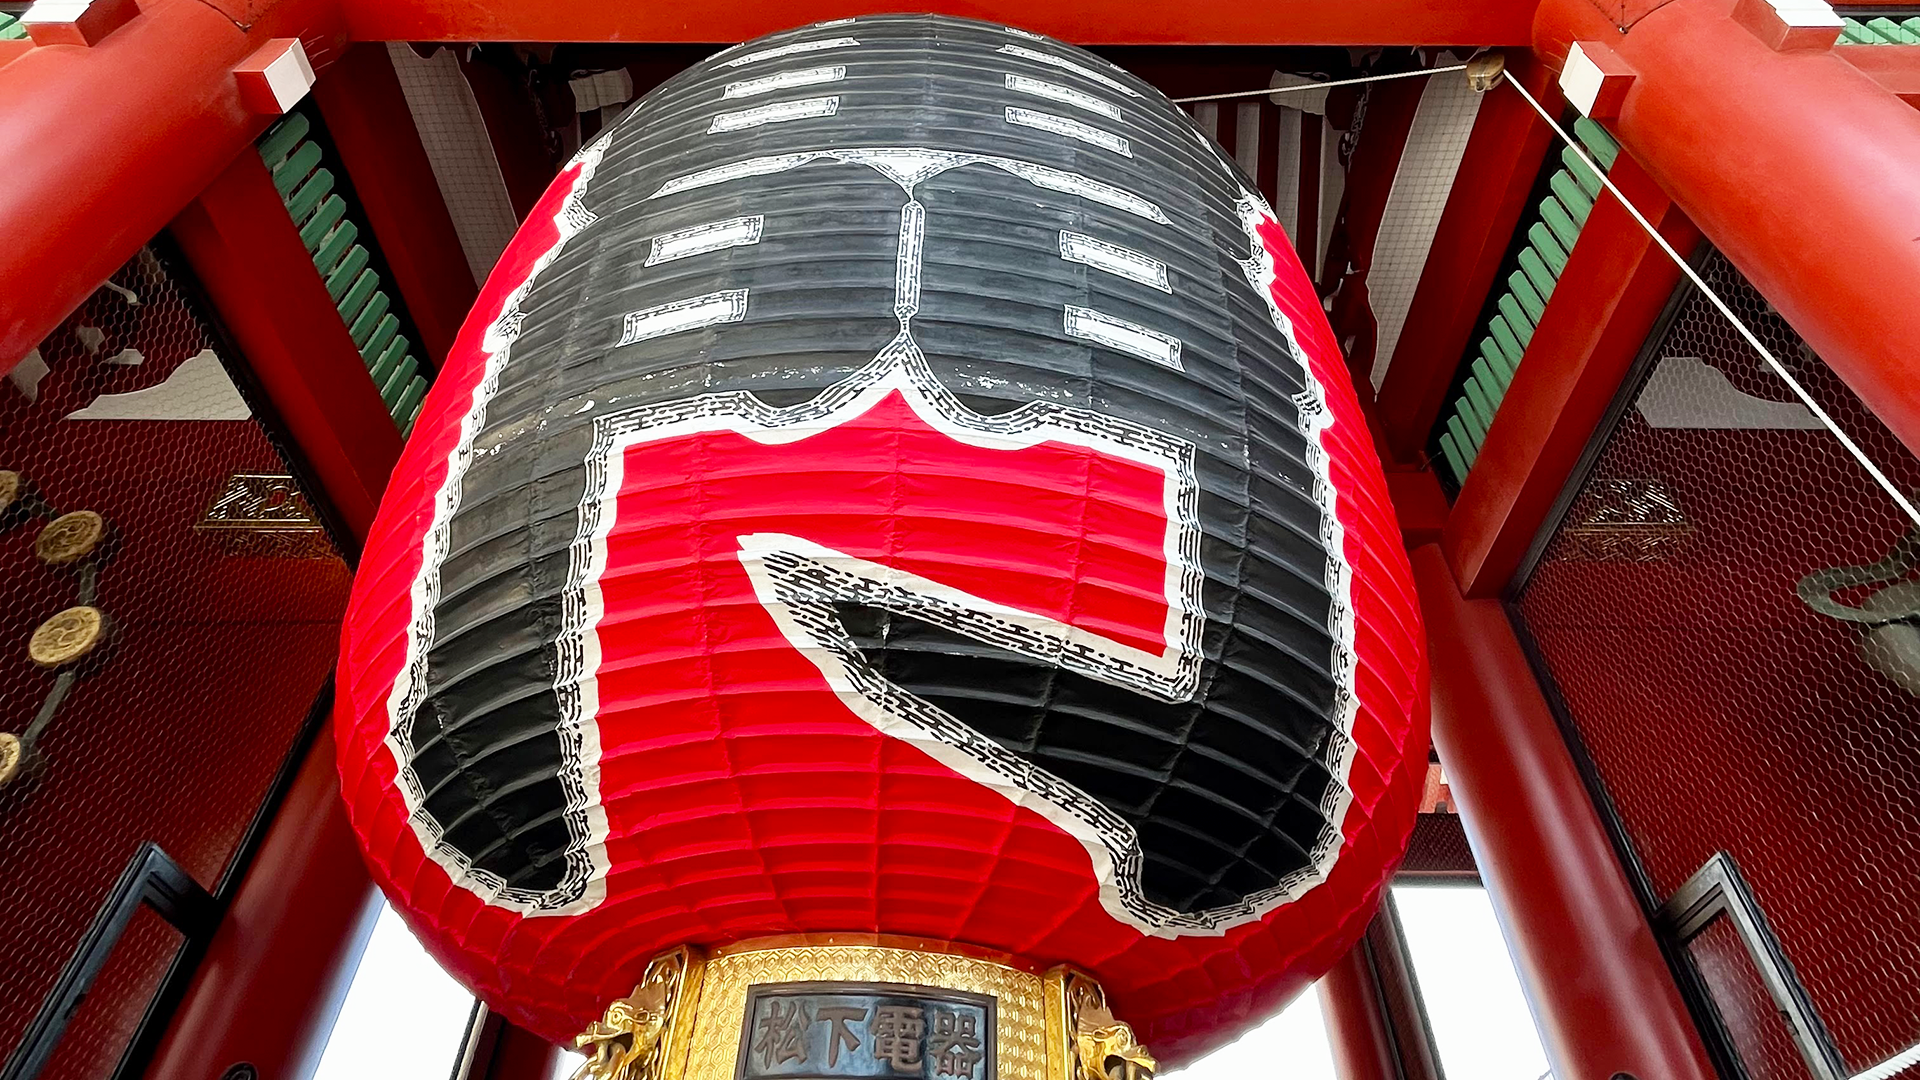 The giant lantern of Kaminarimon gate